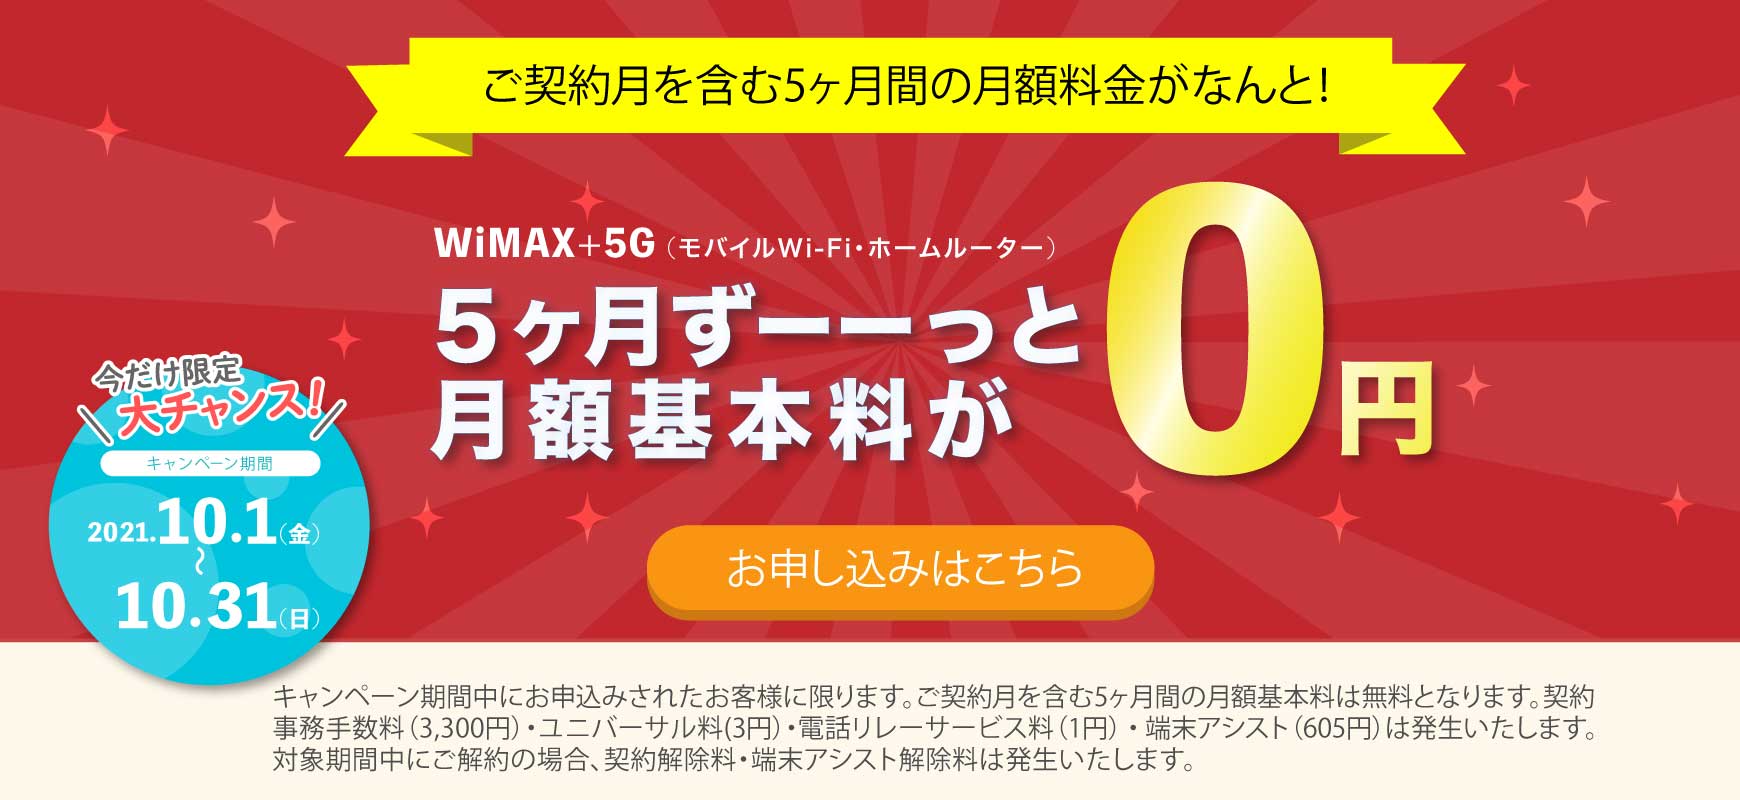 wimax 5G キャンペーン